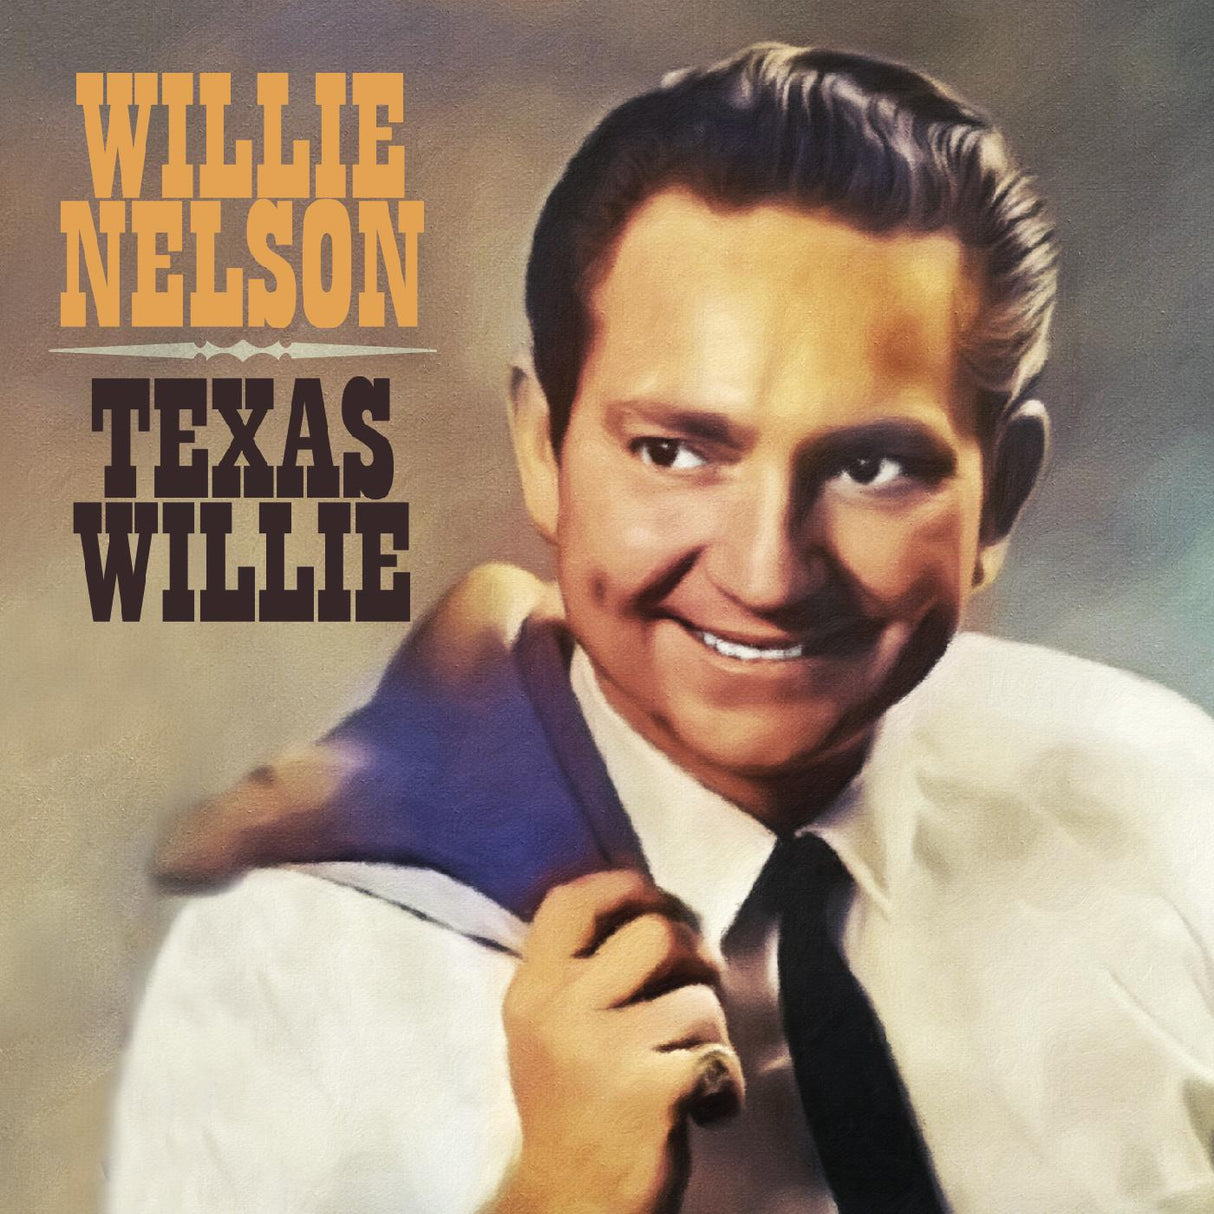 Texas Willie [CD]